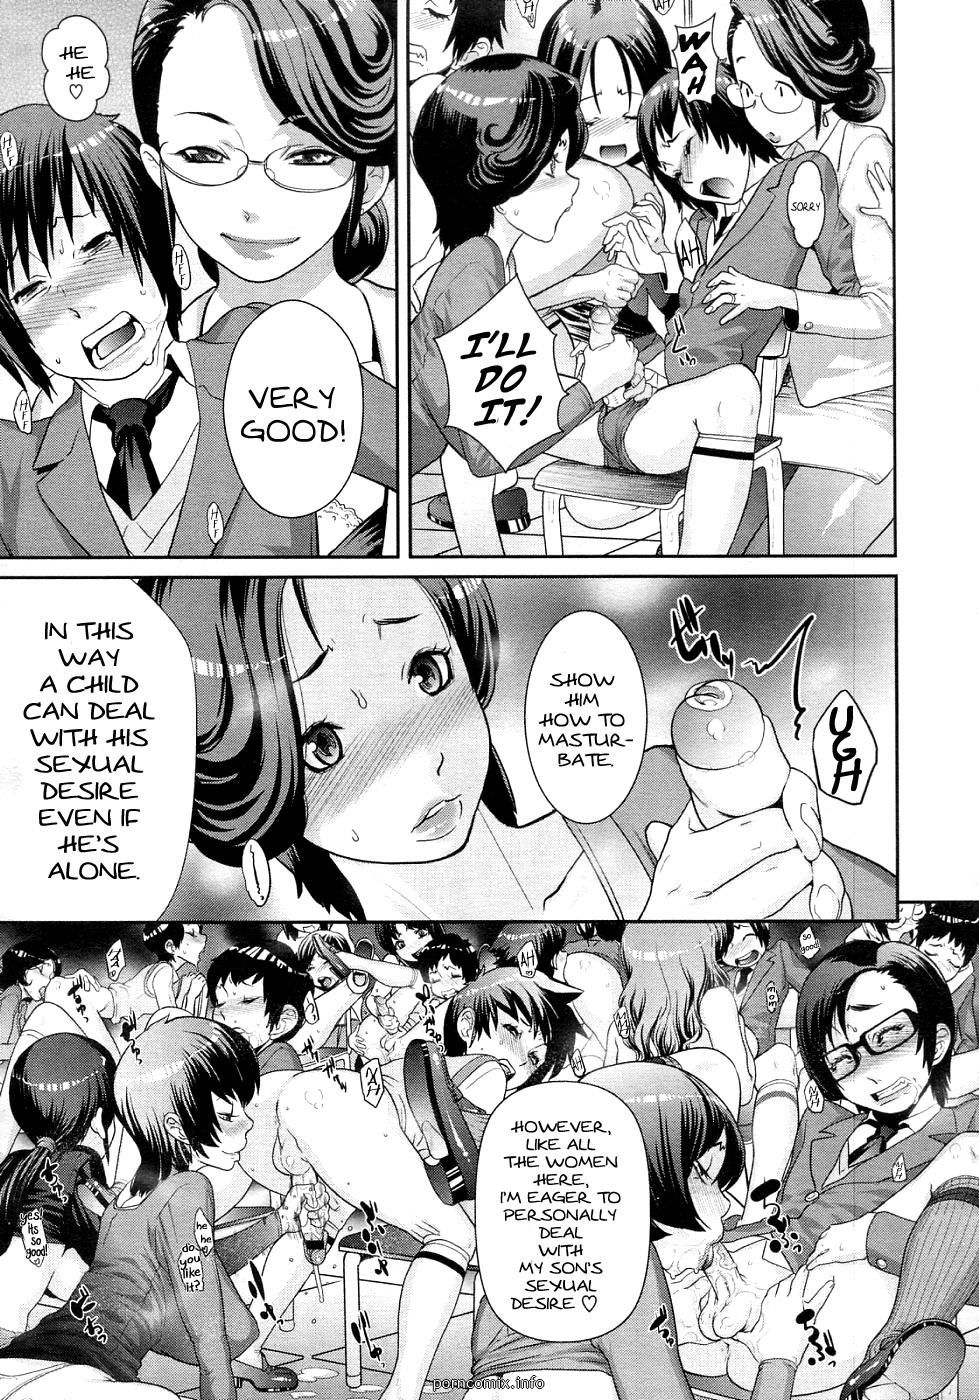 hentai mothers lado depois de escola Mulheres page 1